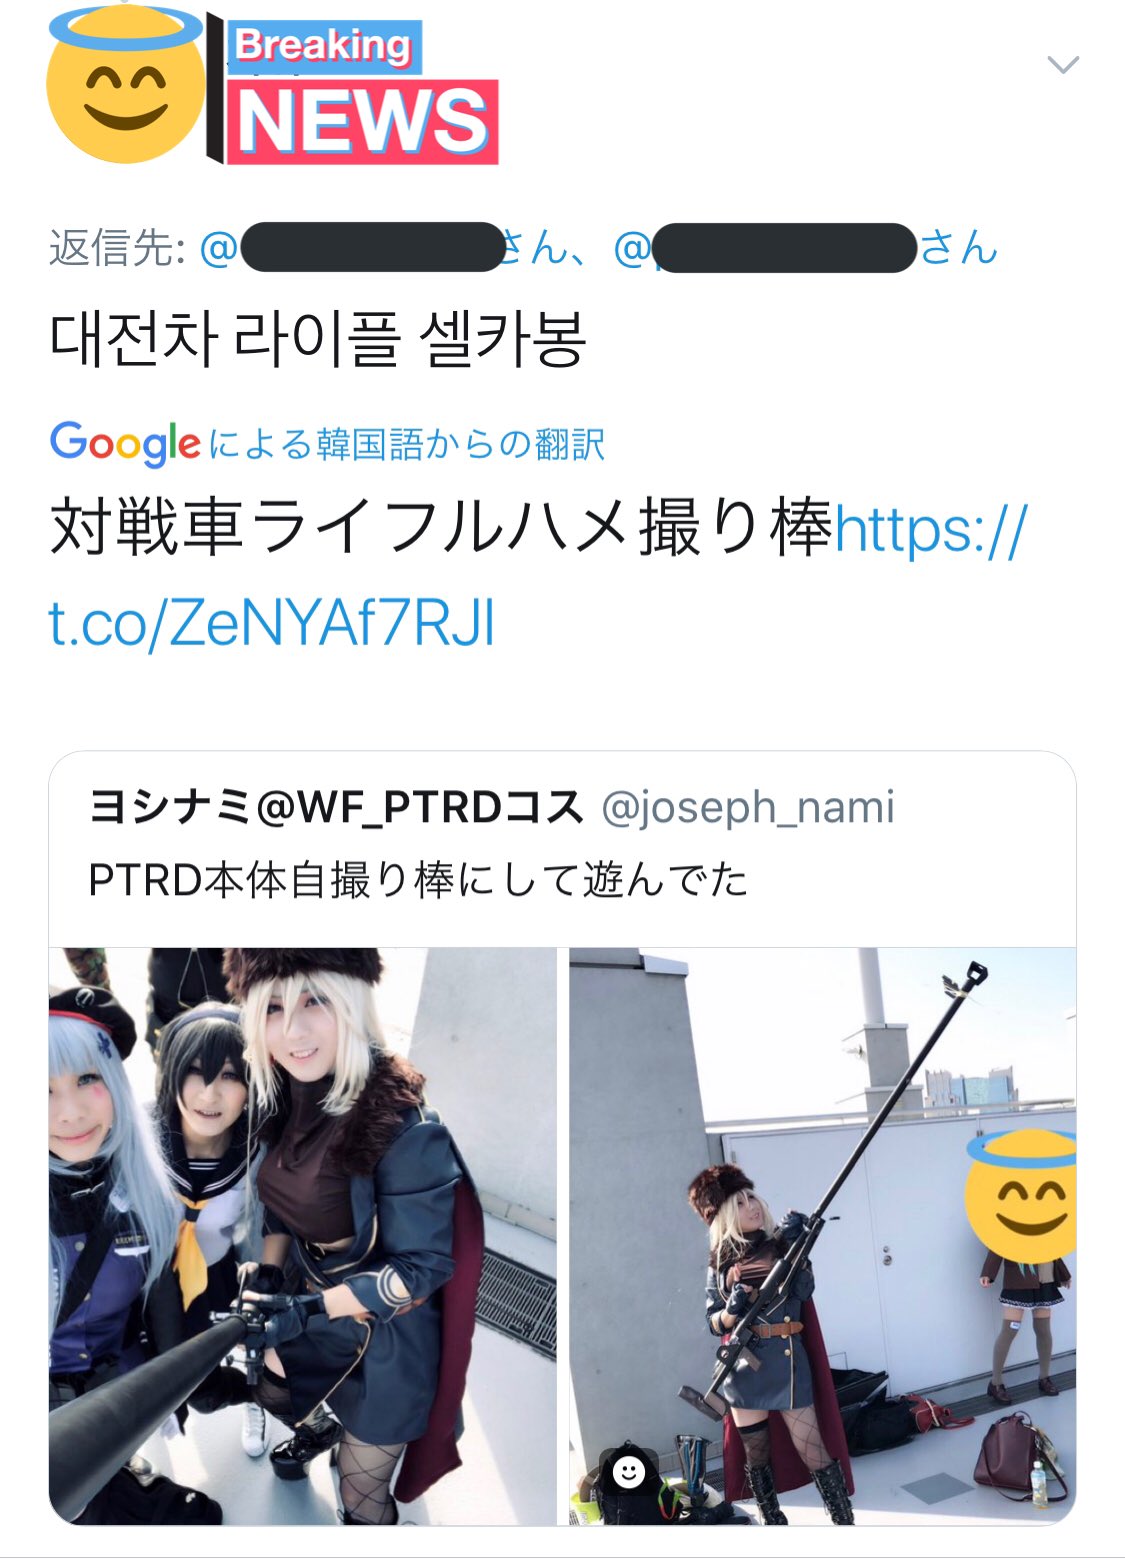 ヨシナミ 韓国語からの再翻訳の 対戦車ライフルハメ撮り棒 何度見ても笑ってしまう T Co G6cgbkghlb Twitter